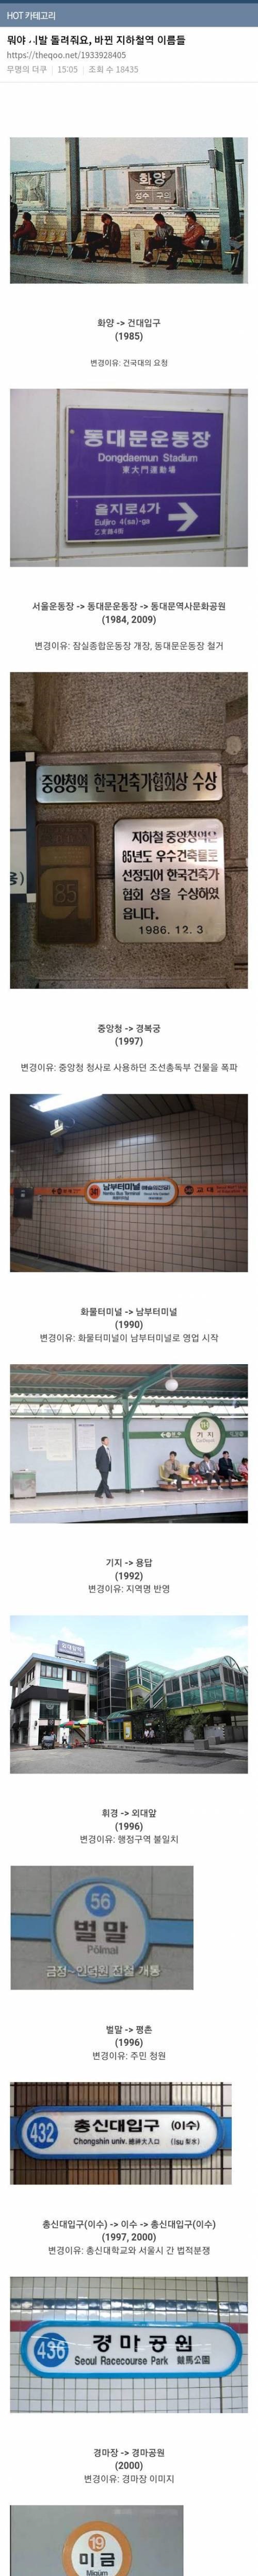 15 바뀐 지하철역 이름들.jpg